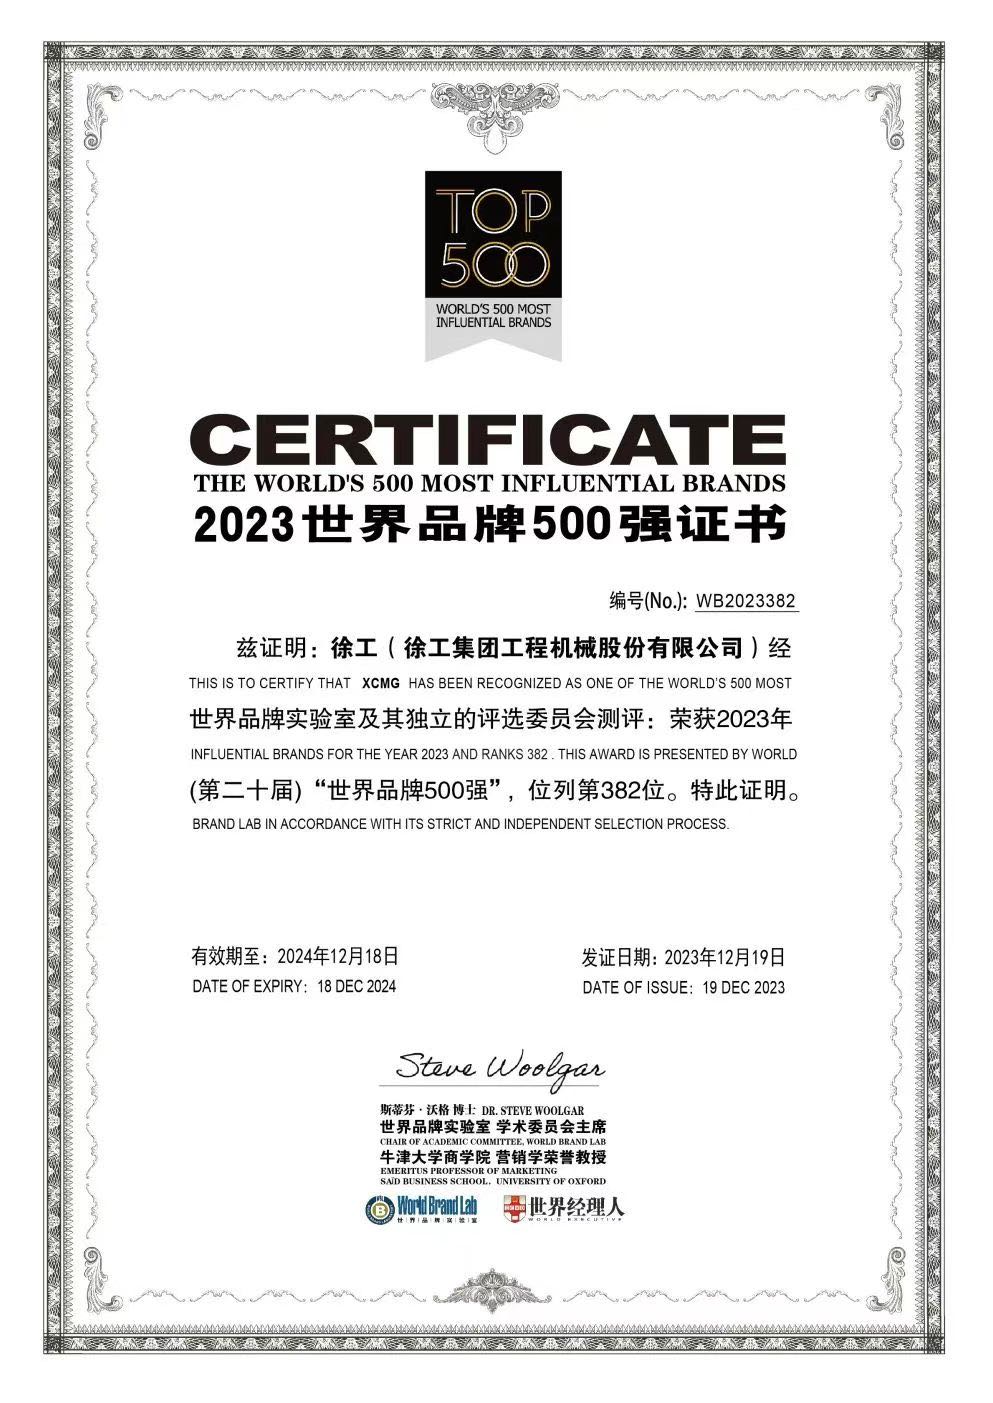 Сертификат ТОП500 самых влиятельных брендов мира - официальная картинка XCMG